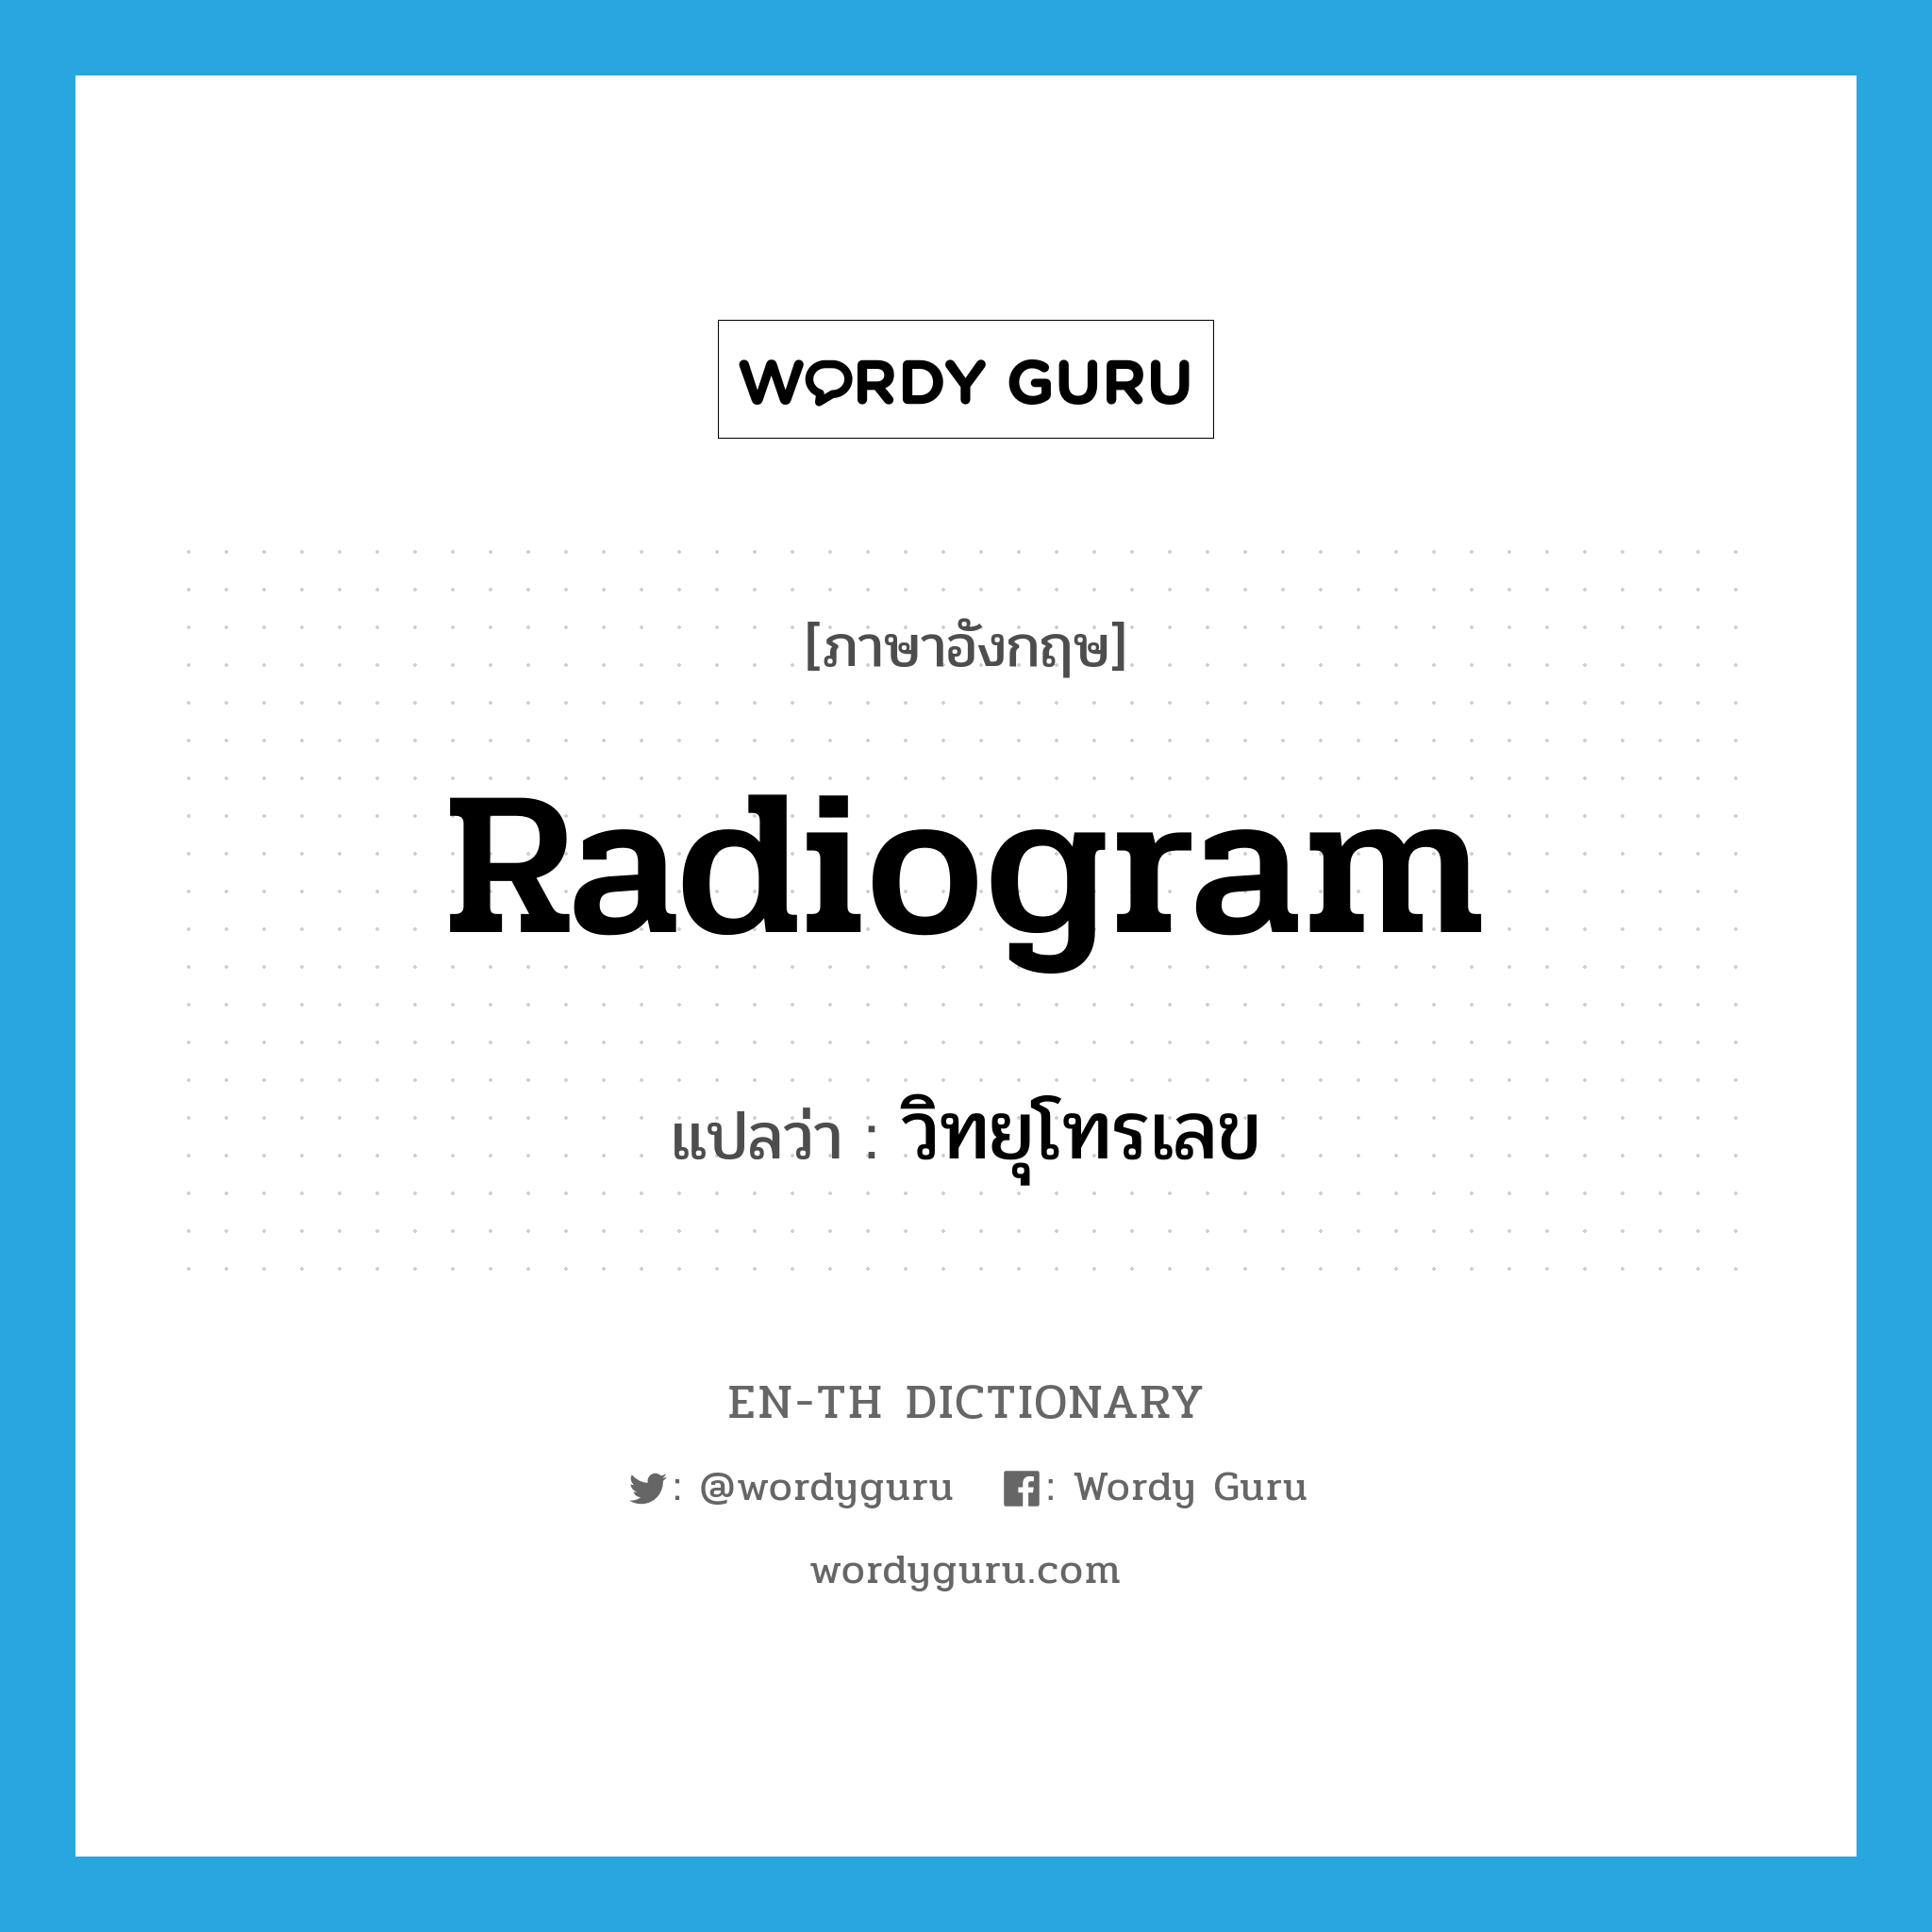 radiogram แปลว่า?, คำศัพท์ภาษาอังกฤษ radiogram แปลว่า วิทยุโทรเลข ประเภท N หมวด N